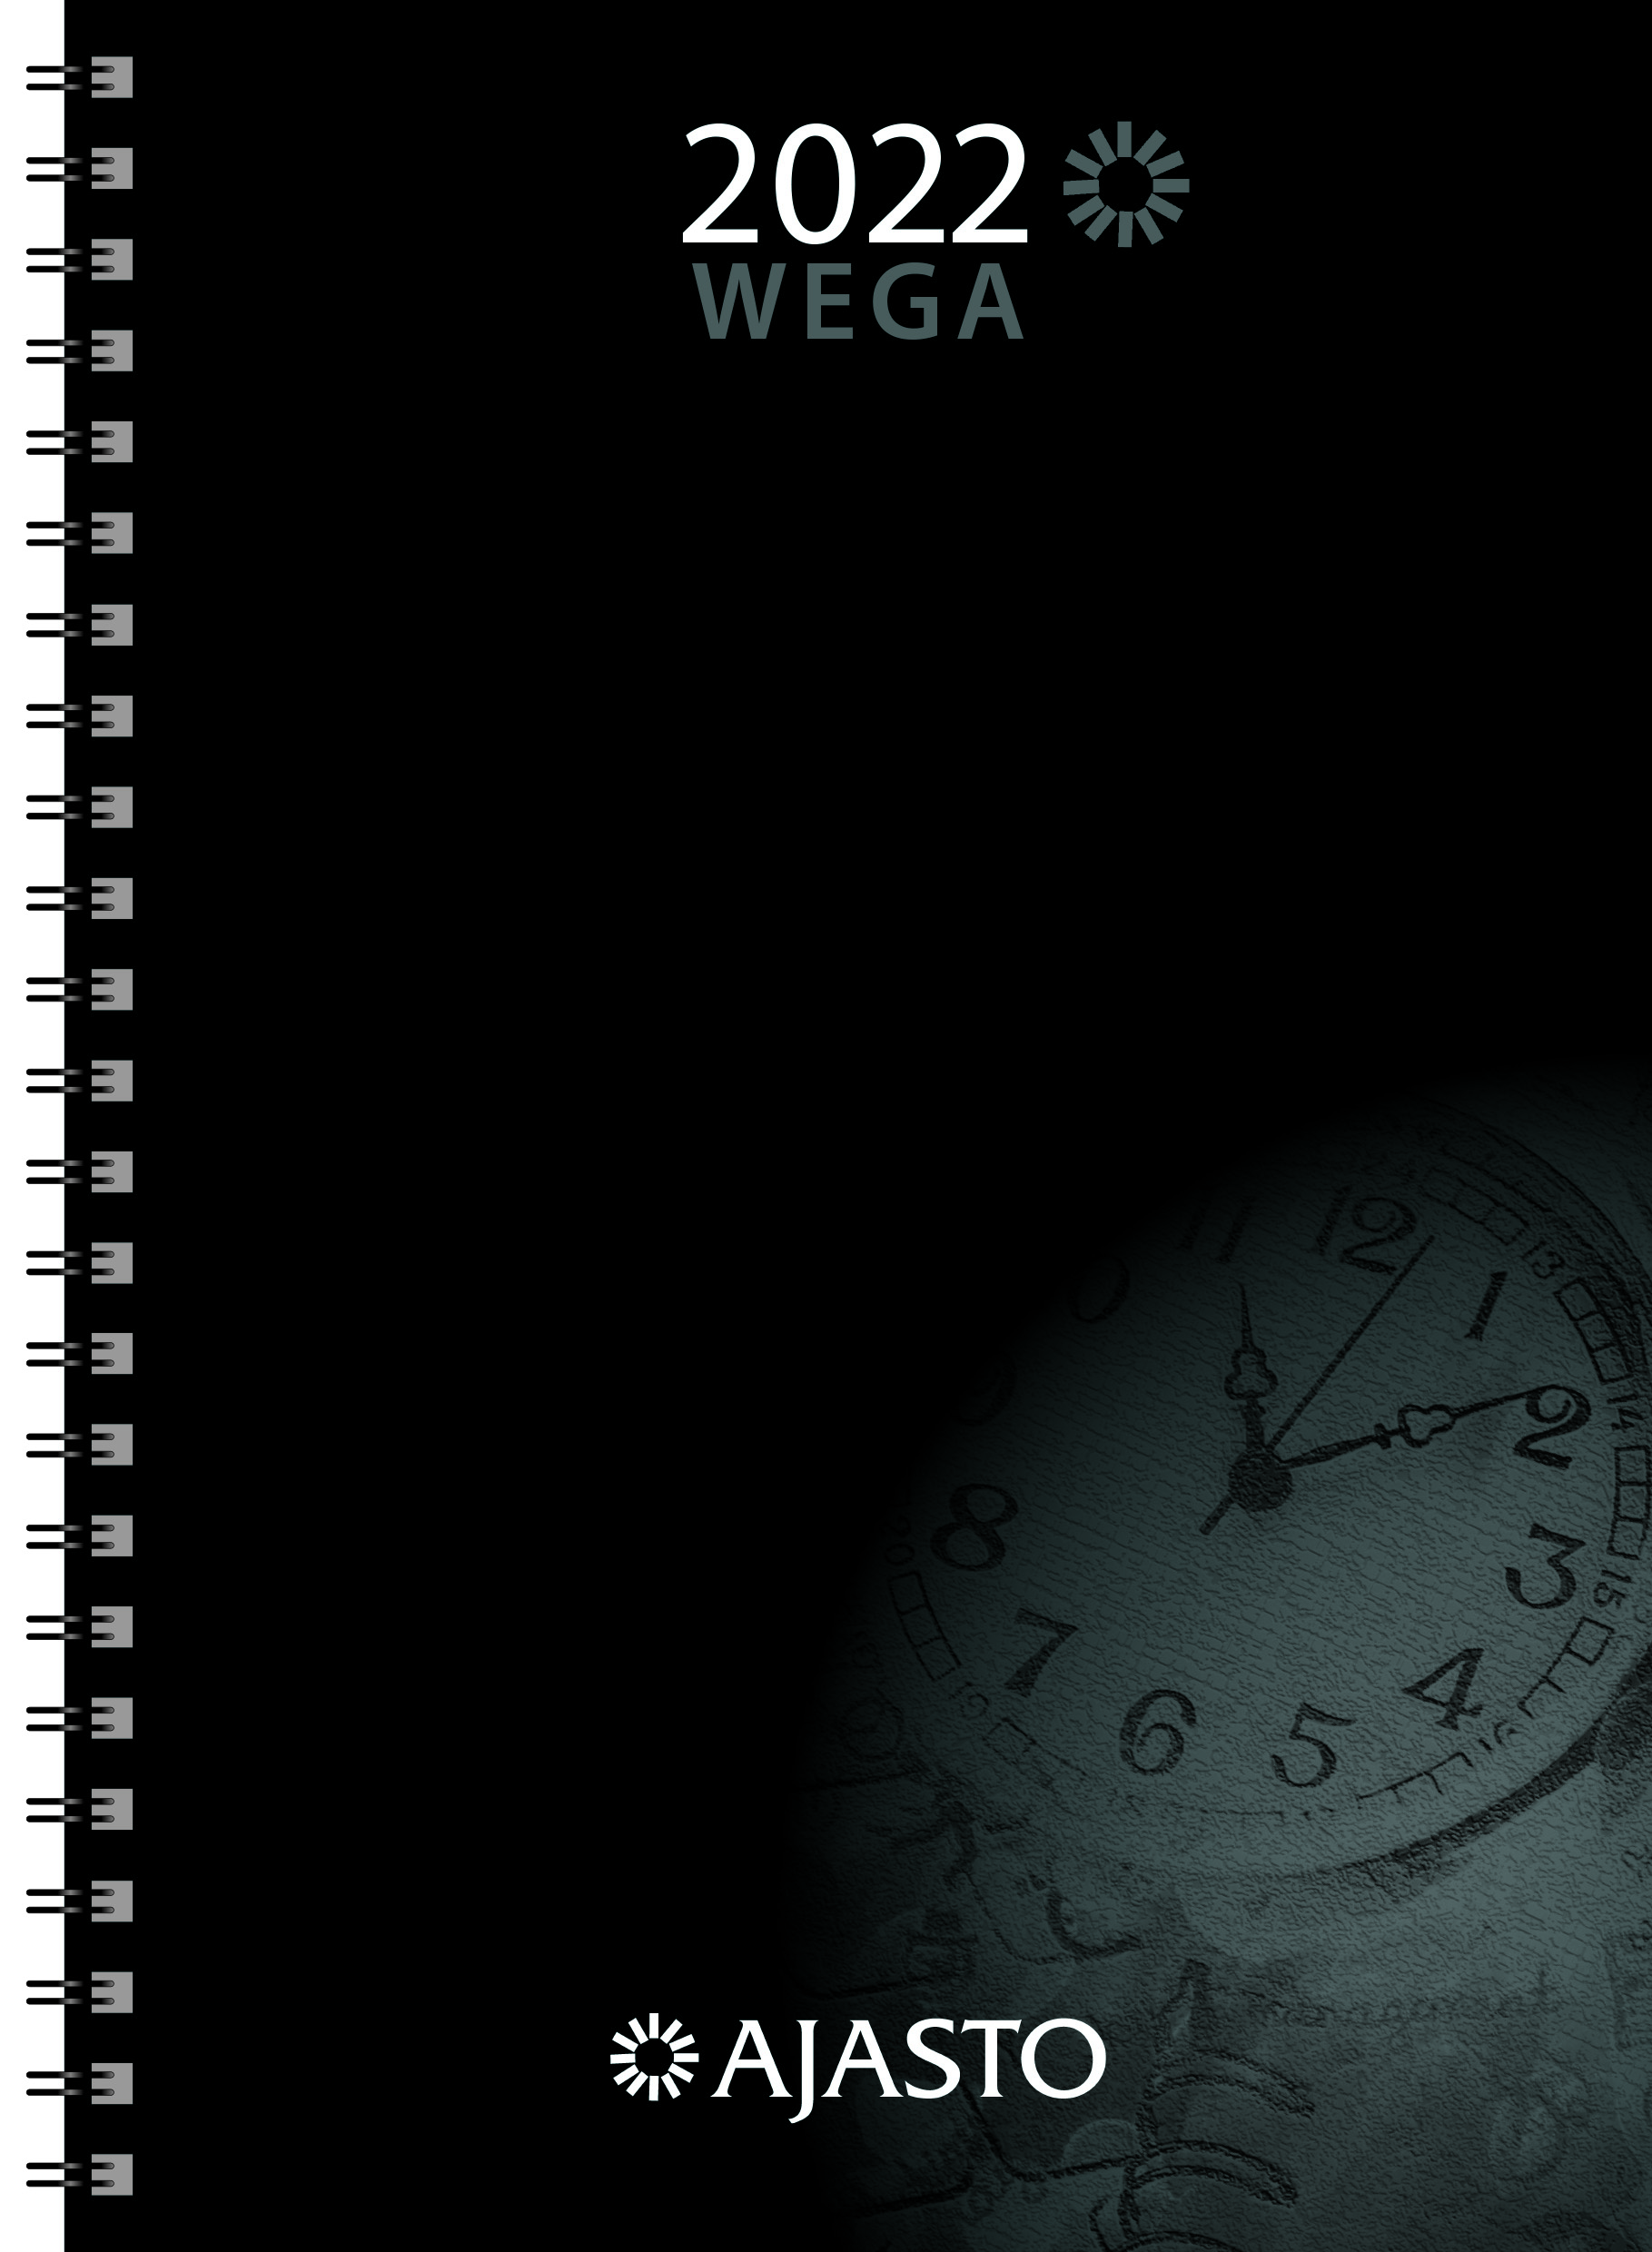 Wega-vuosipaketti 2022